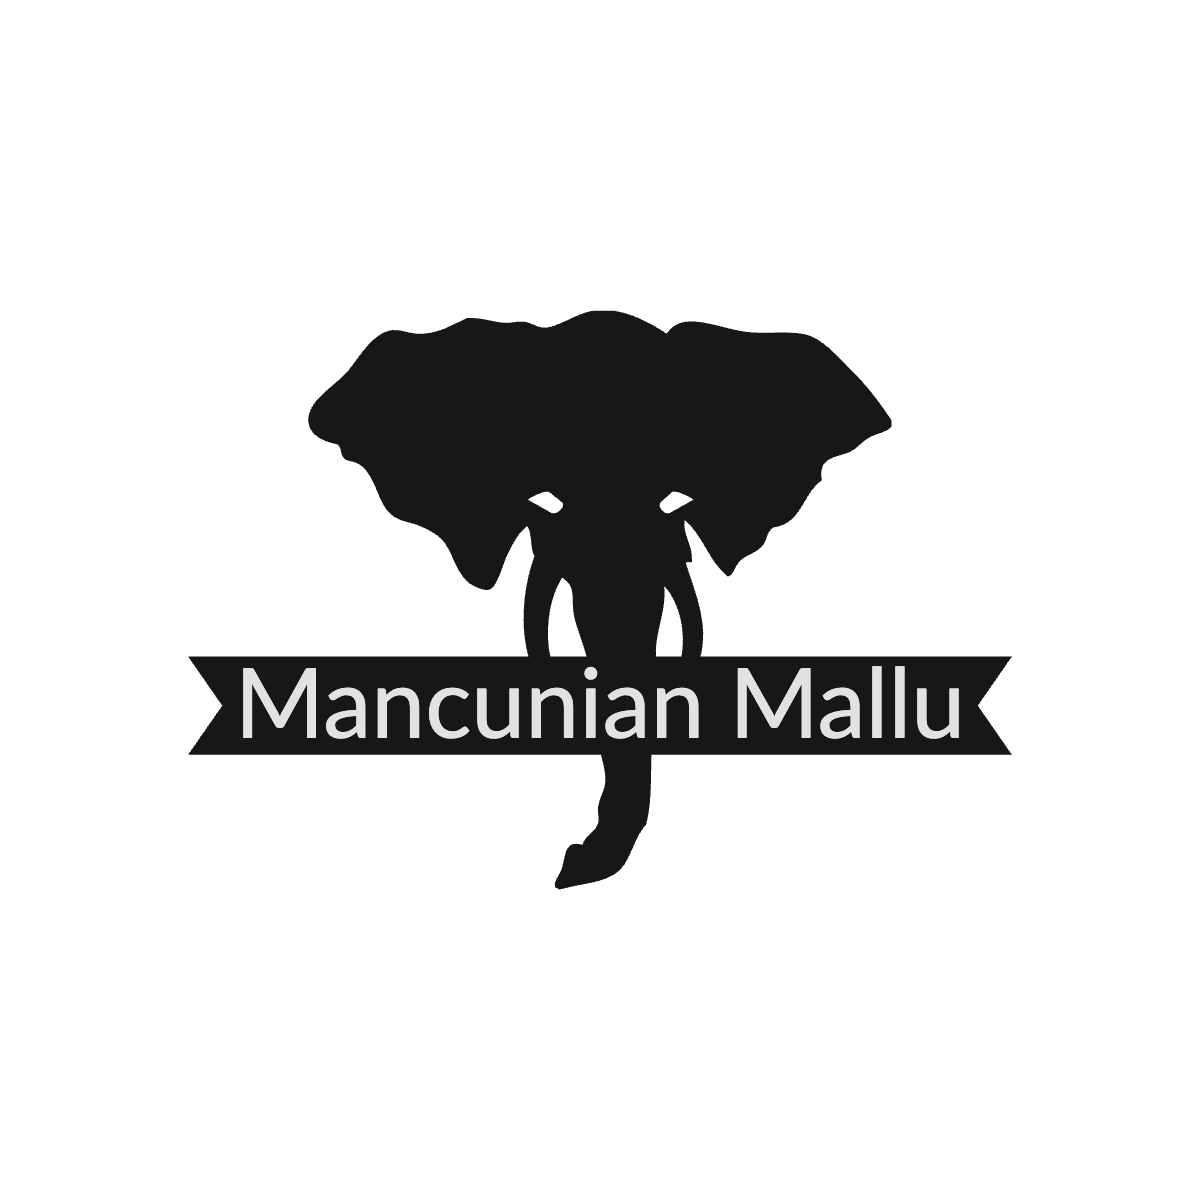 Mancunian Mallu